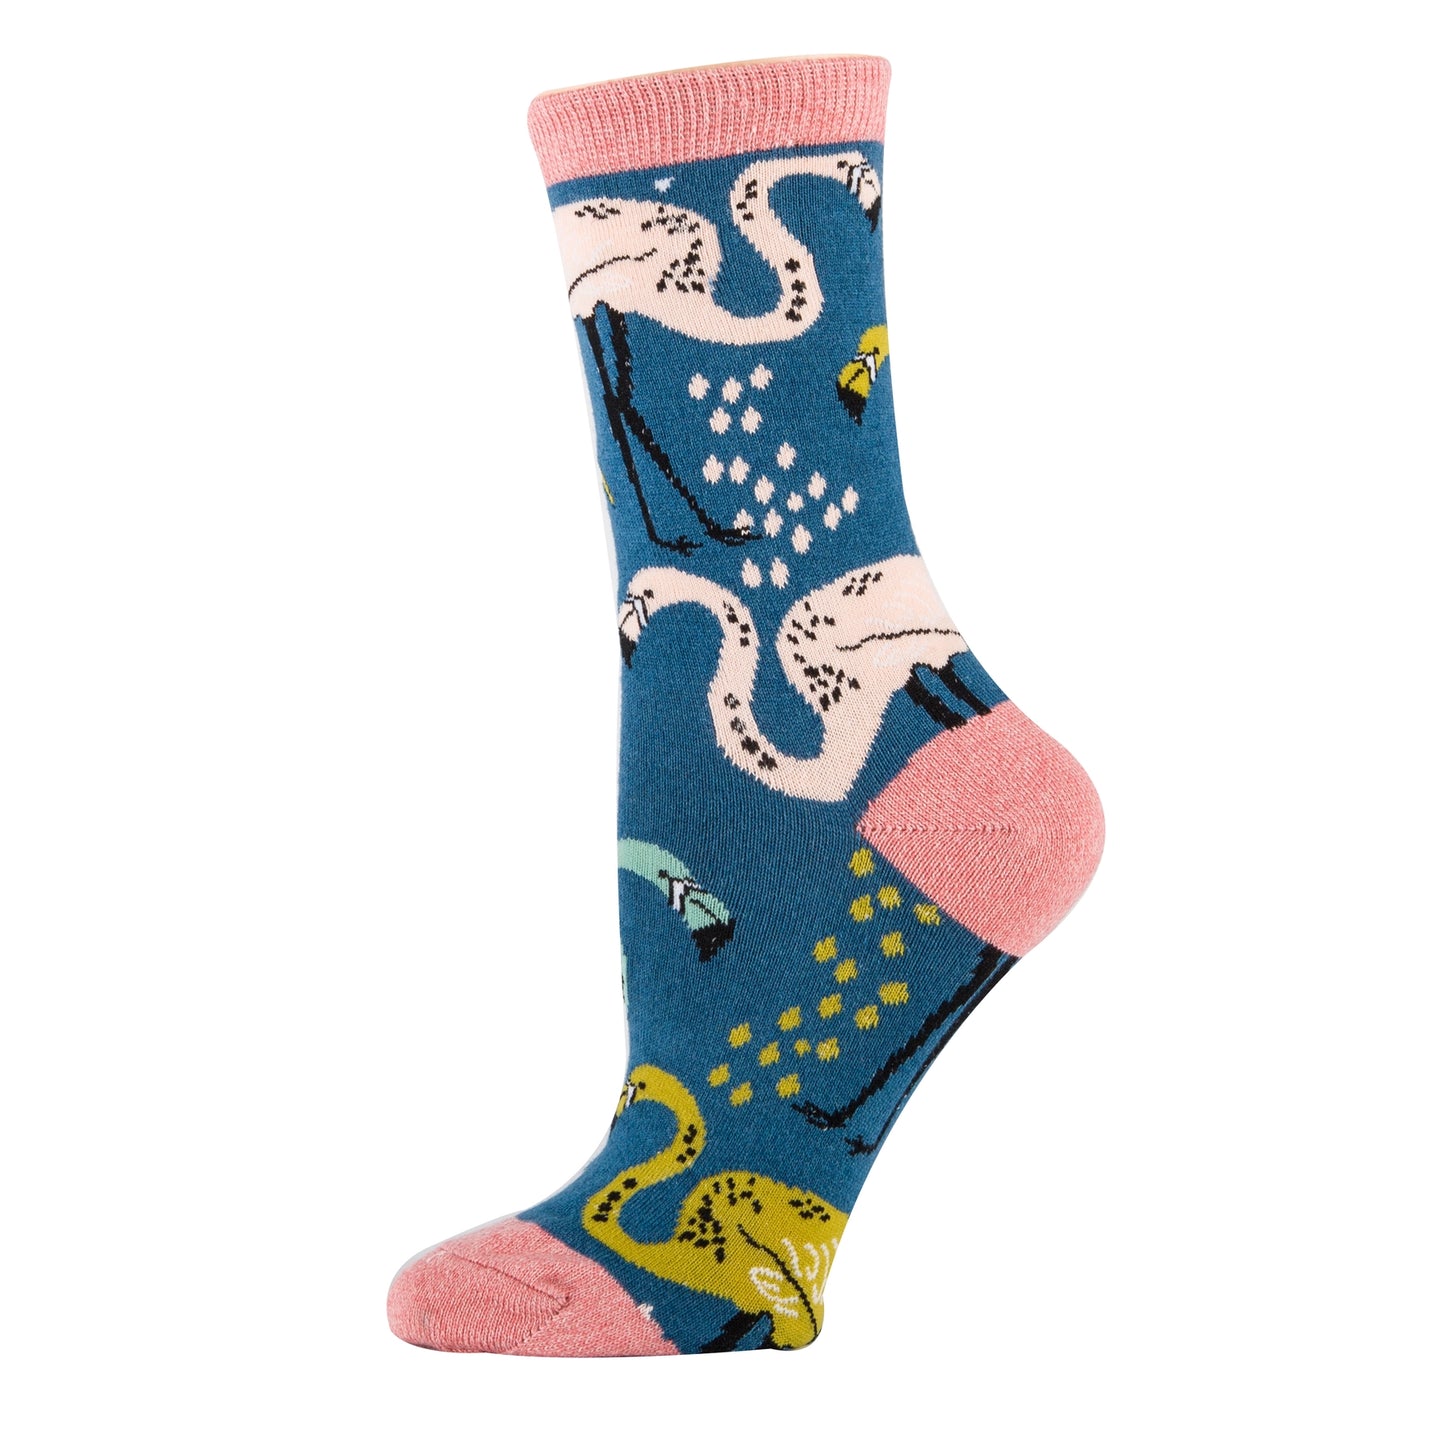 Oooh Yeah Socks - Roadrunner| Women's Premium Cotton Crew Dress Socks